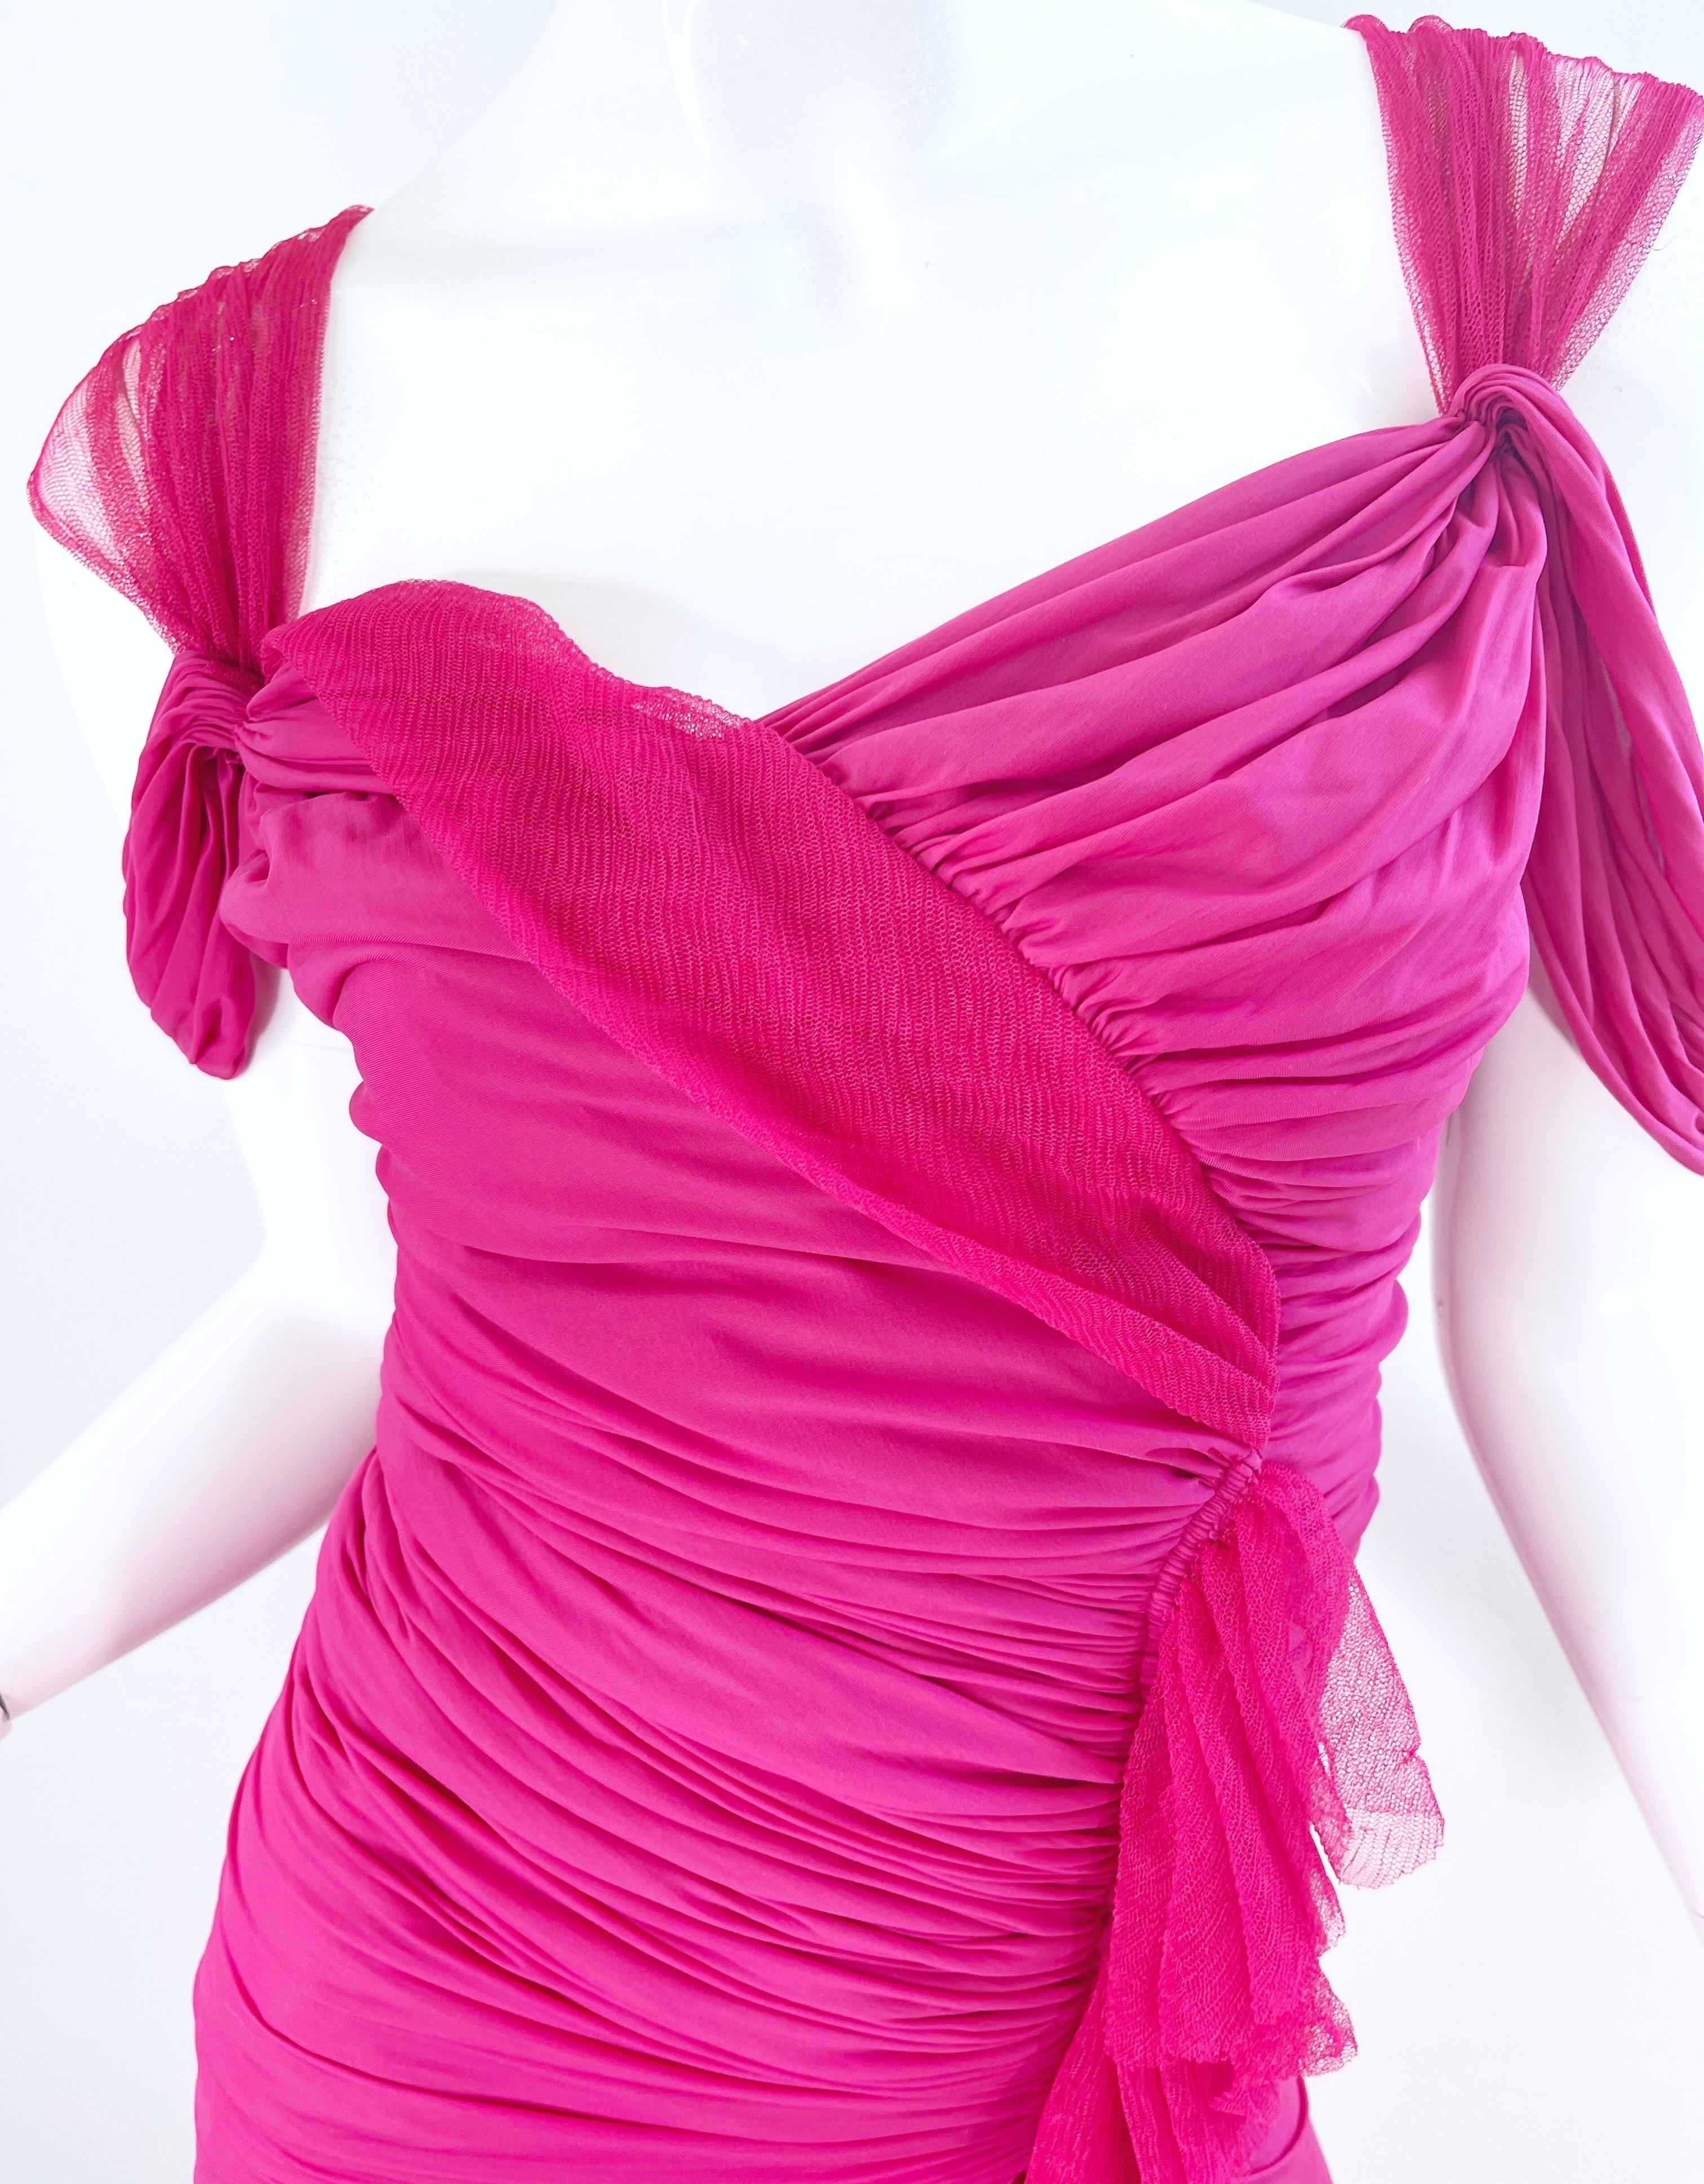 Donna Karan Runway Fall 2004 Hot Pink Off Shoulder Vintage Jersey Tulle Dress For Sale 2